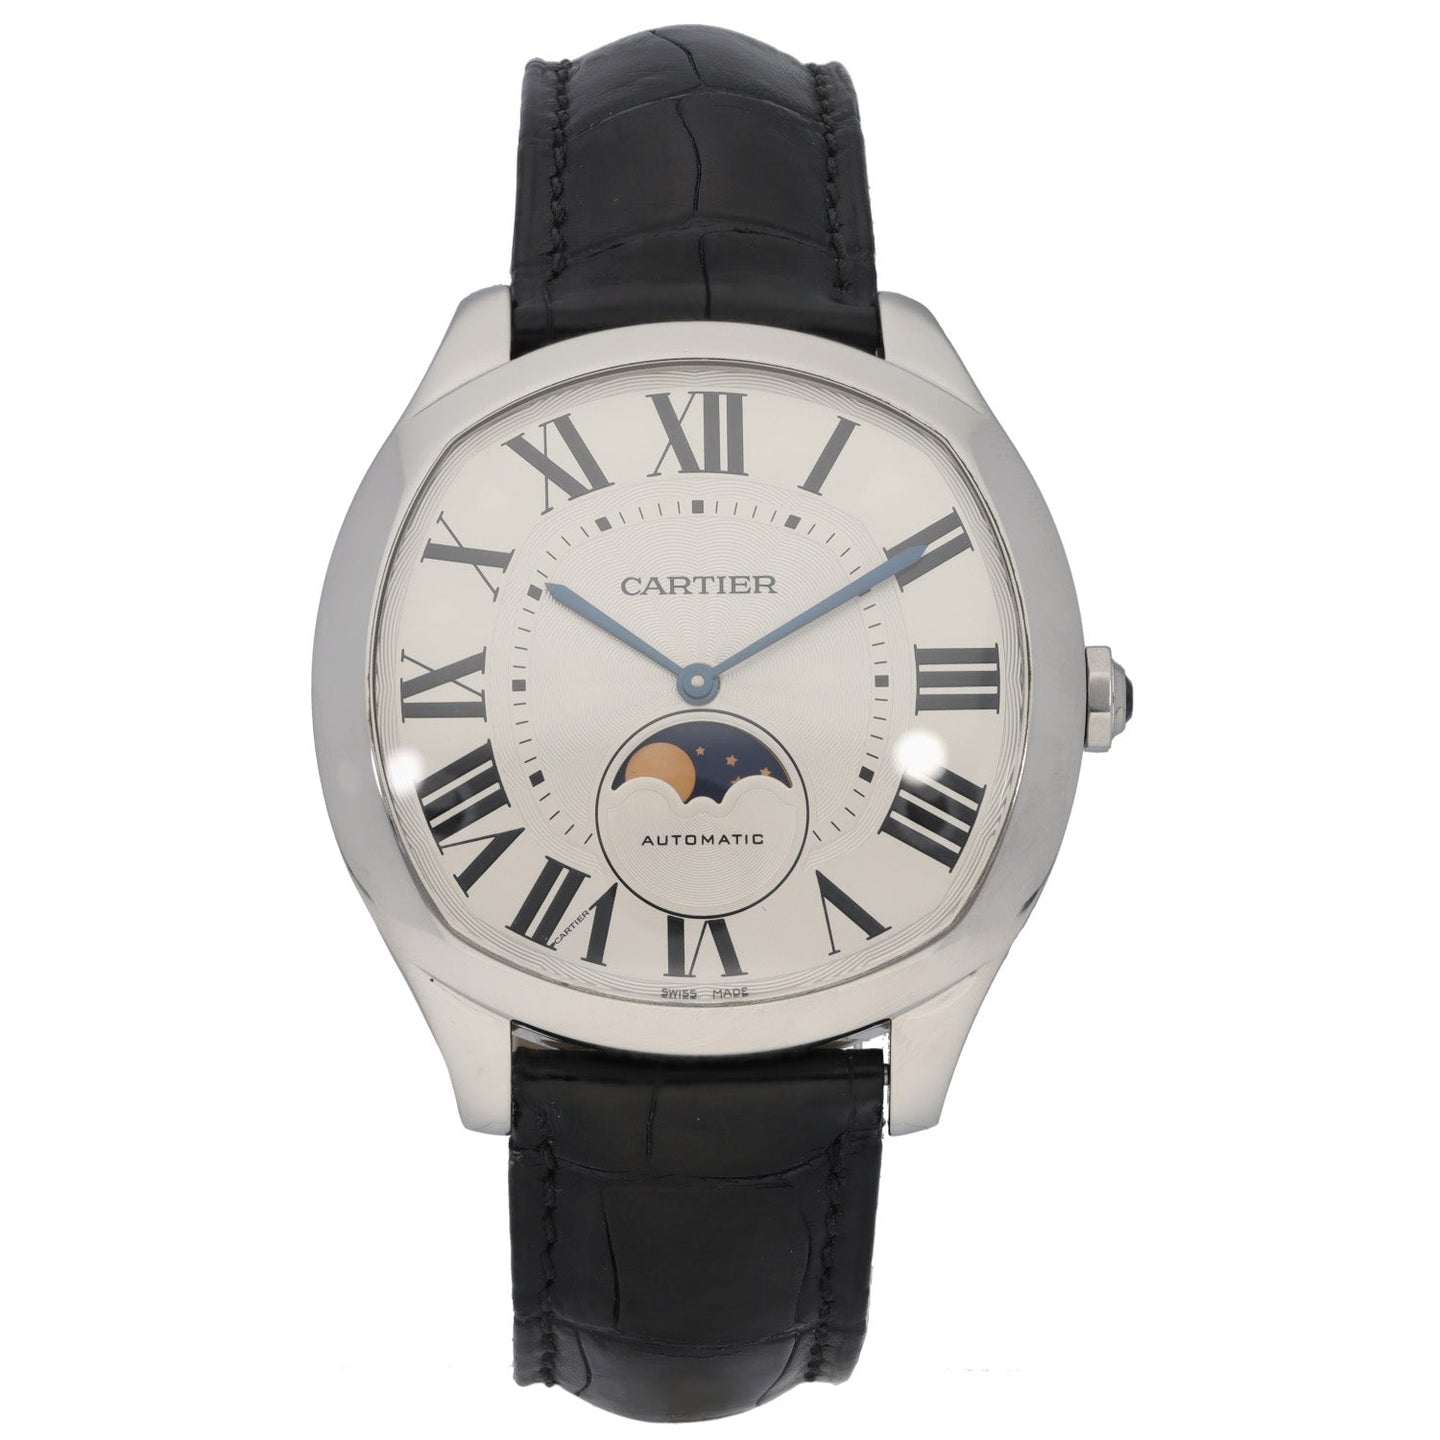 Cartier Drive De Cartier WSNM0008 41mm Stainless Steel Watch